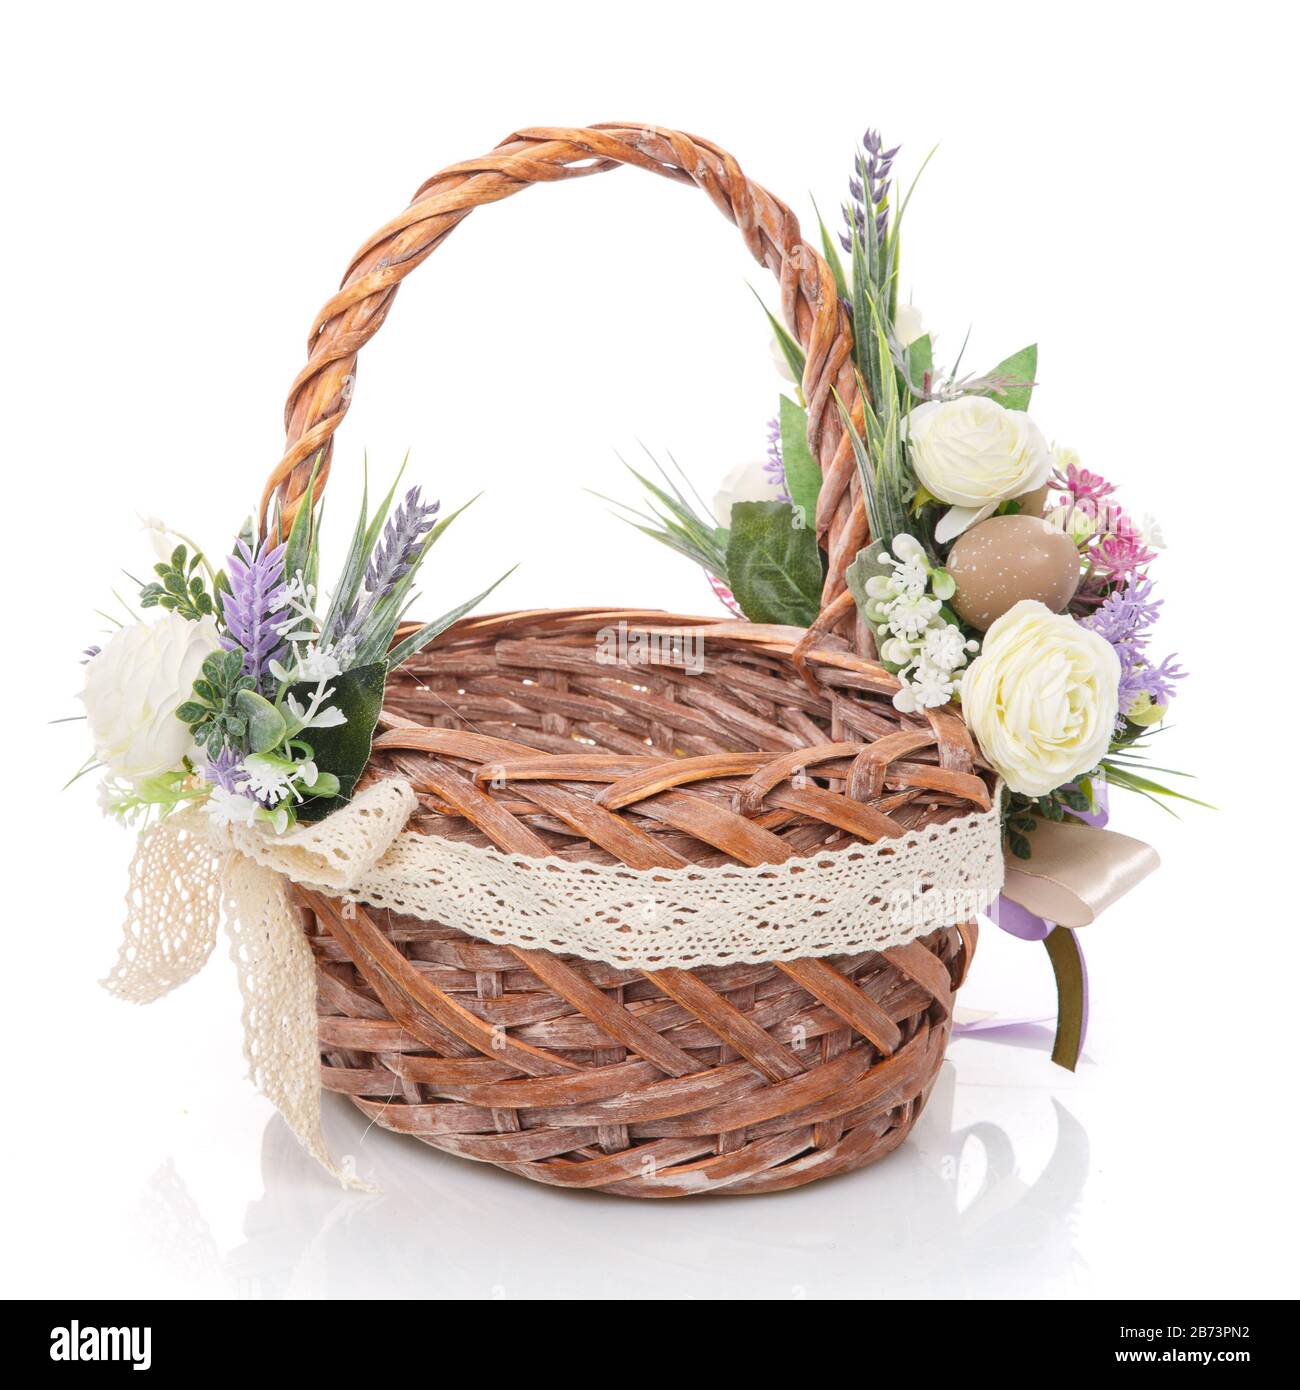 Schöner großer Weidenkorb mit zarten Blüten, Lavendel, Grün und Netz.  Dekoriert in rustikalem Stil auf weißem Hintergrund Stockfotografie - Alamy